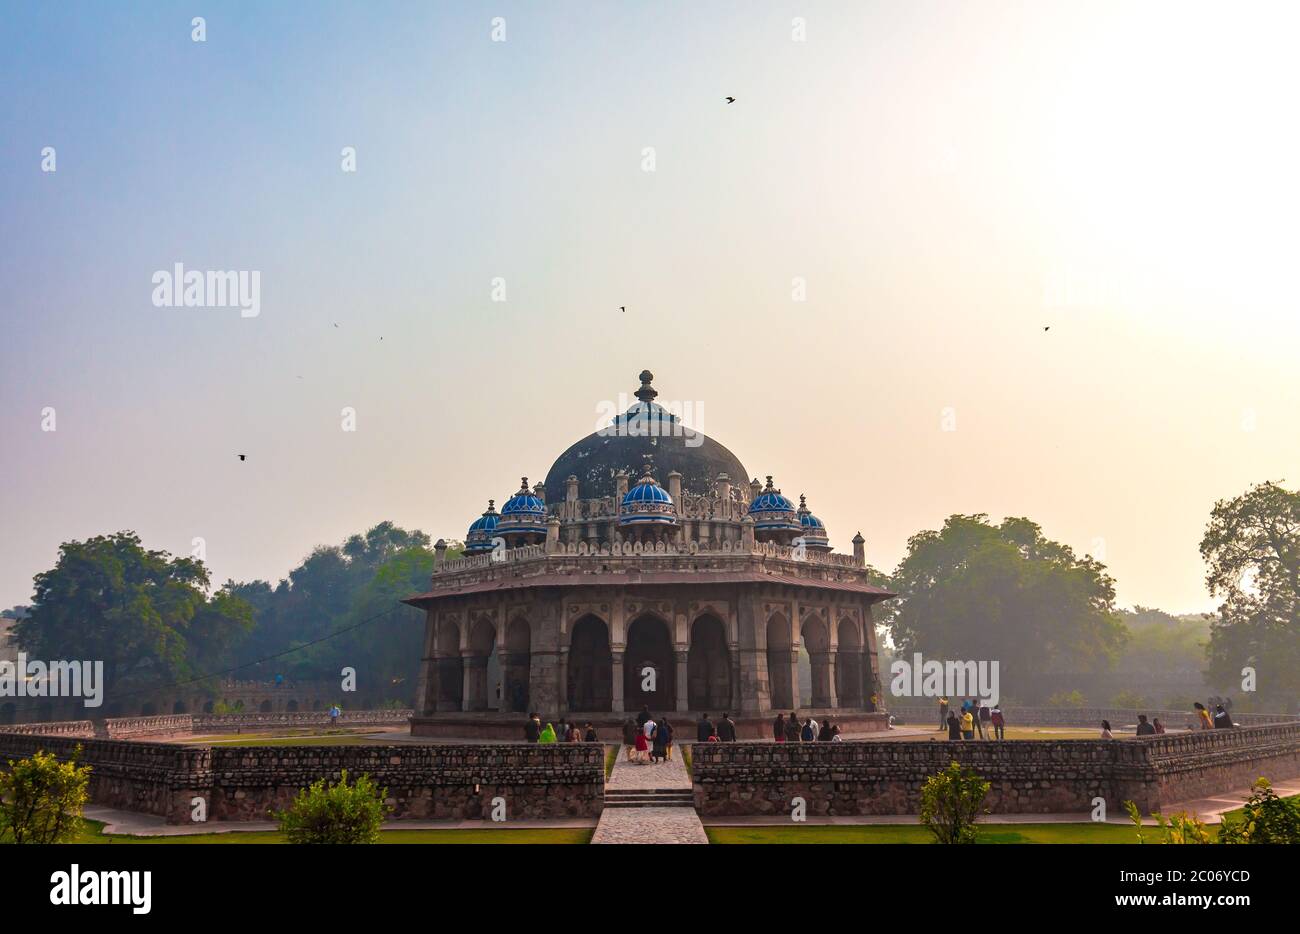 La tomba di ISA Khan a Nuova Delhi, India, è splendidamente adornata con piastrelle verniciate, tende ornate, finestre a reticolo e ampie verande tenute da pilastri. Foto Stock